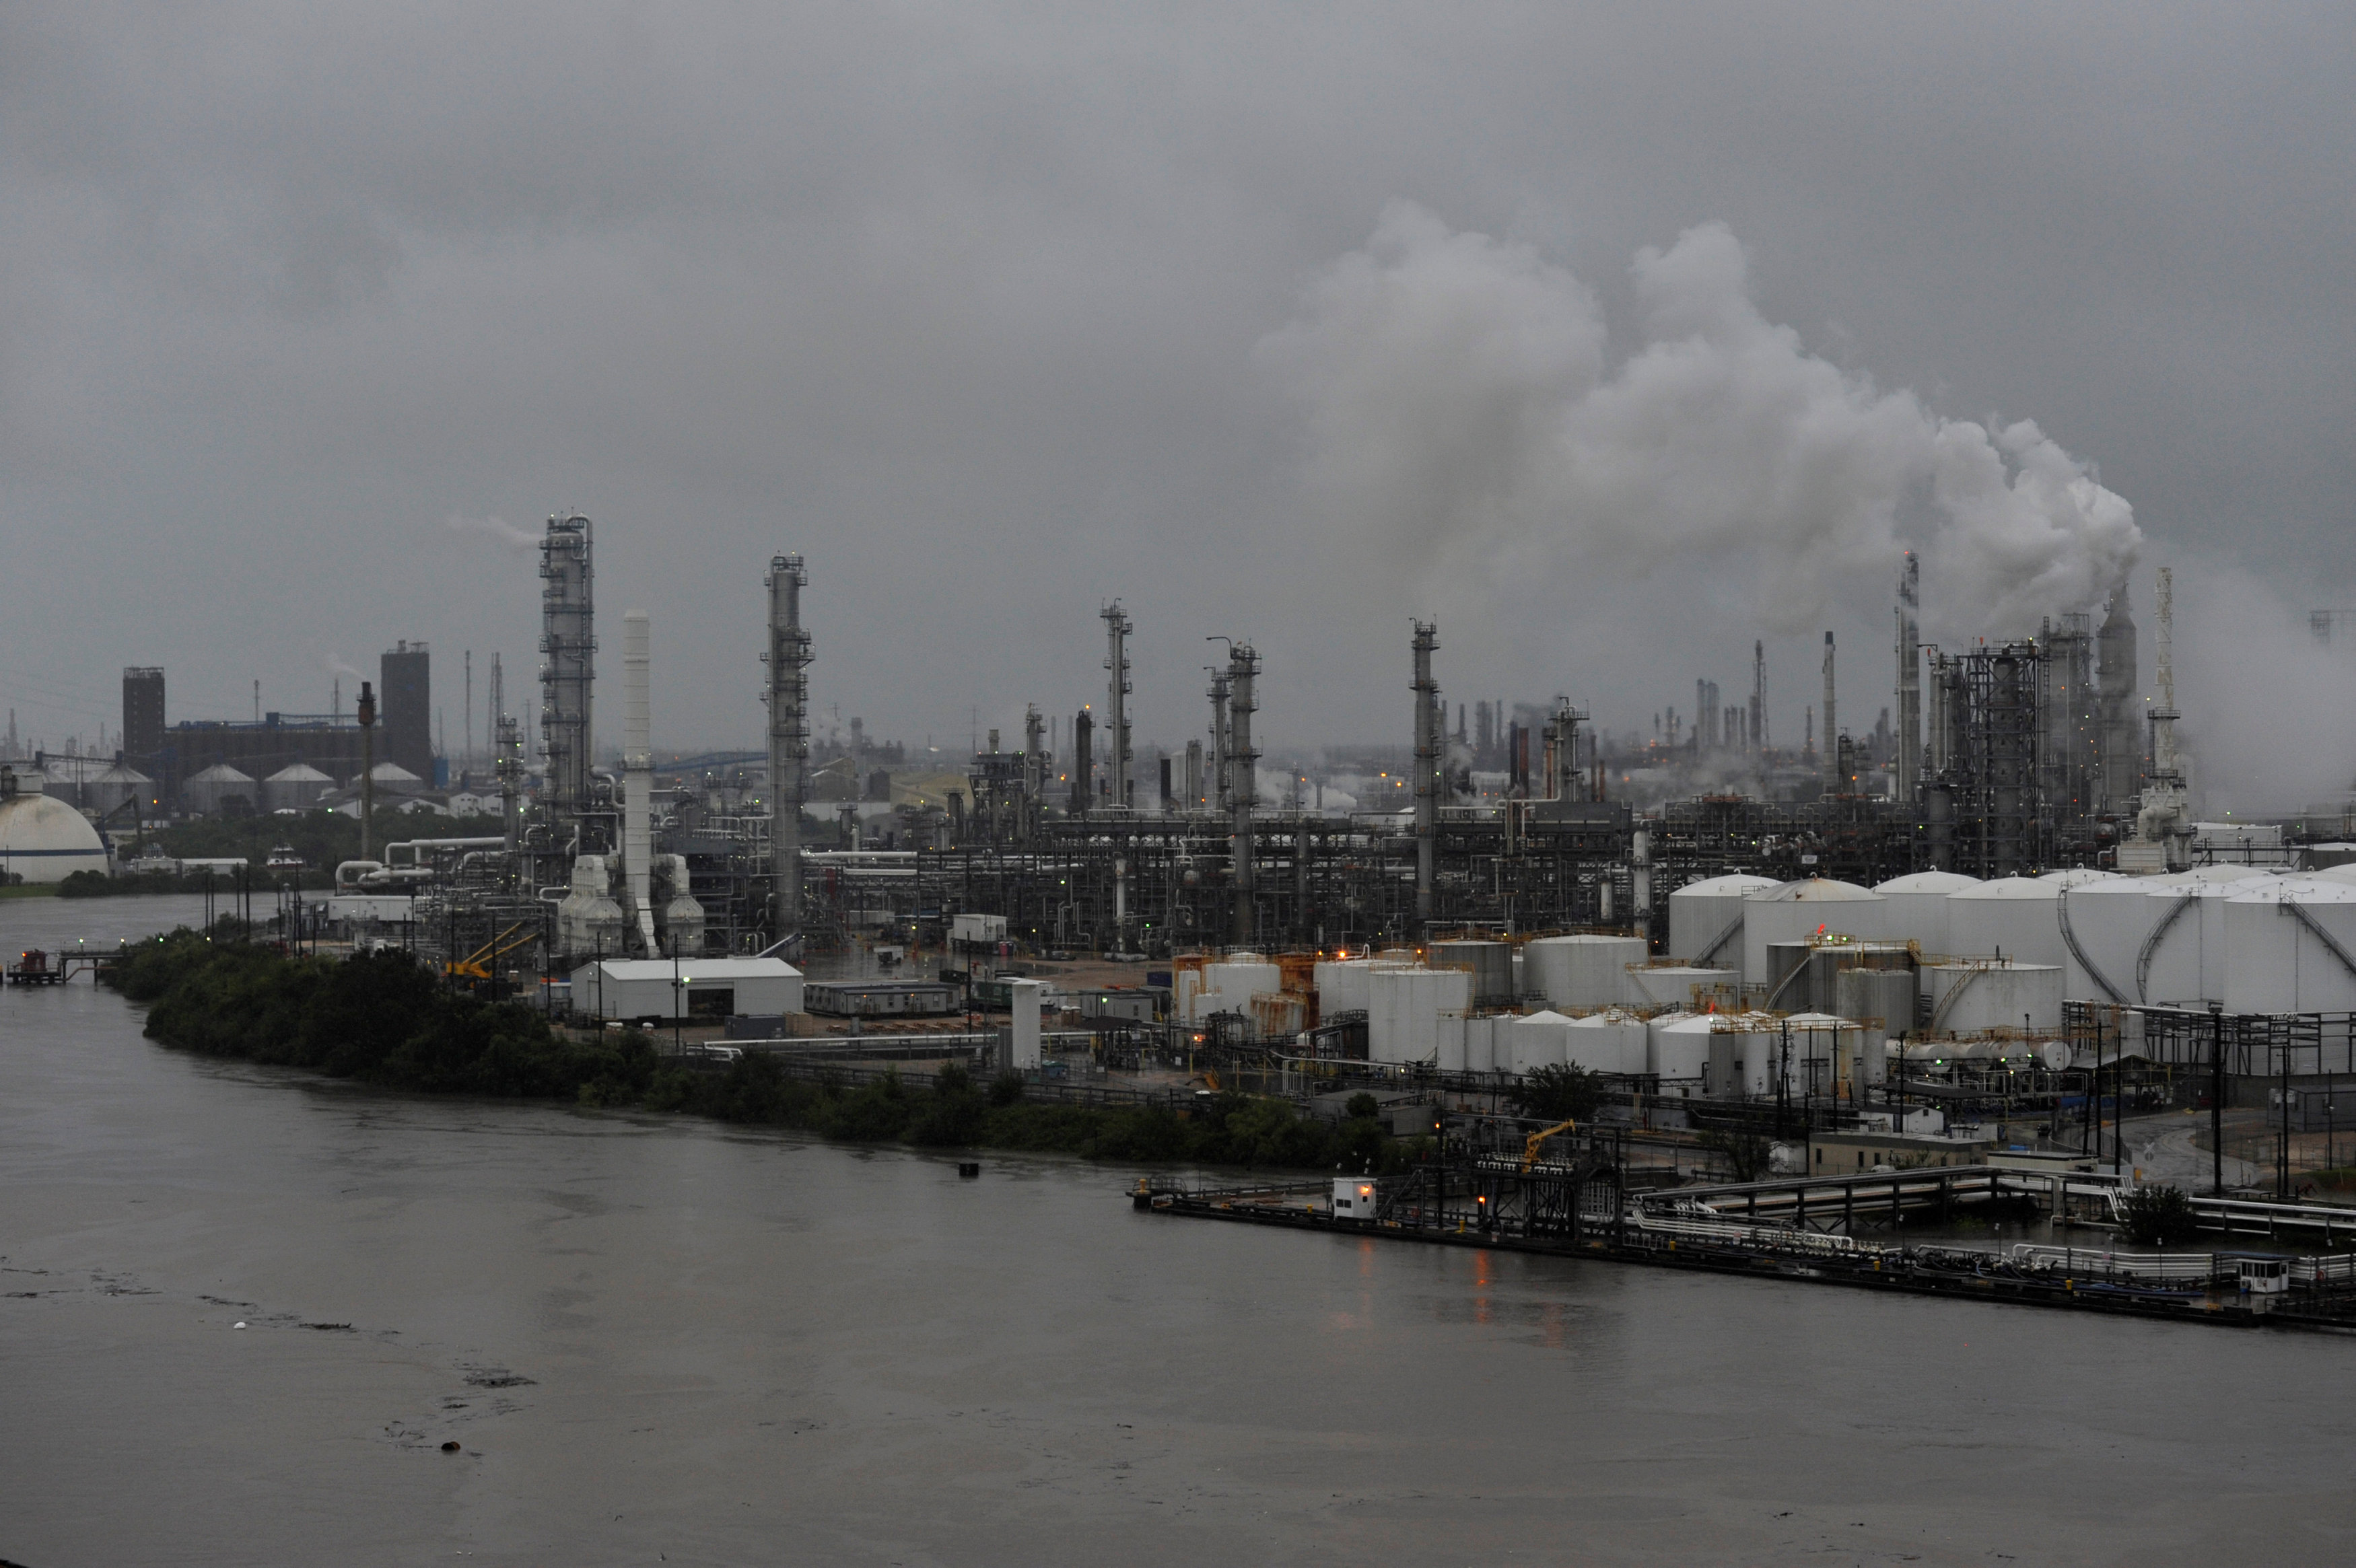 Cierra la mayor refinería de EU debido a inundaciones por "Harvey"